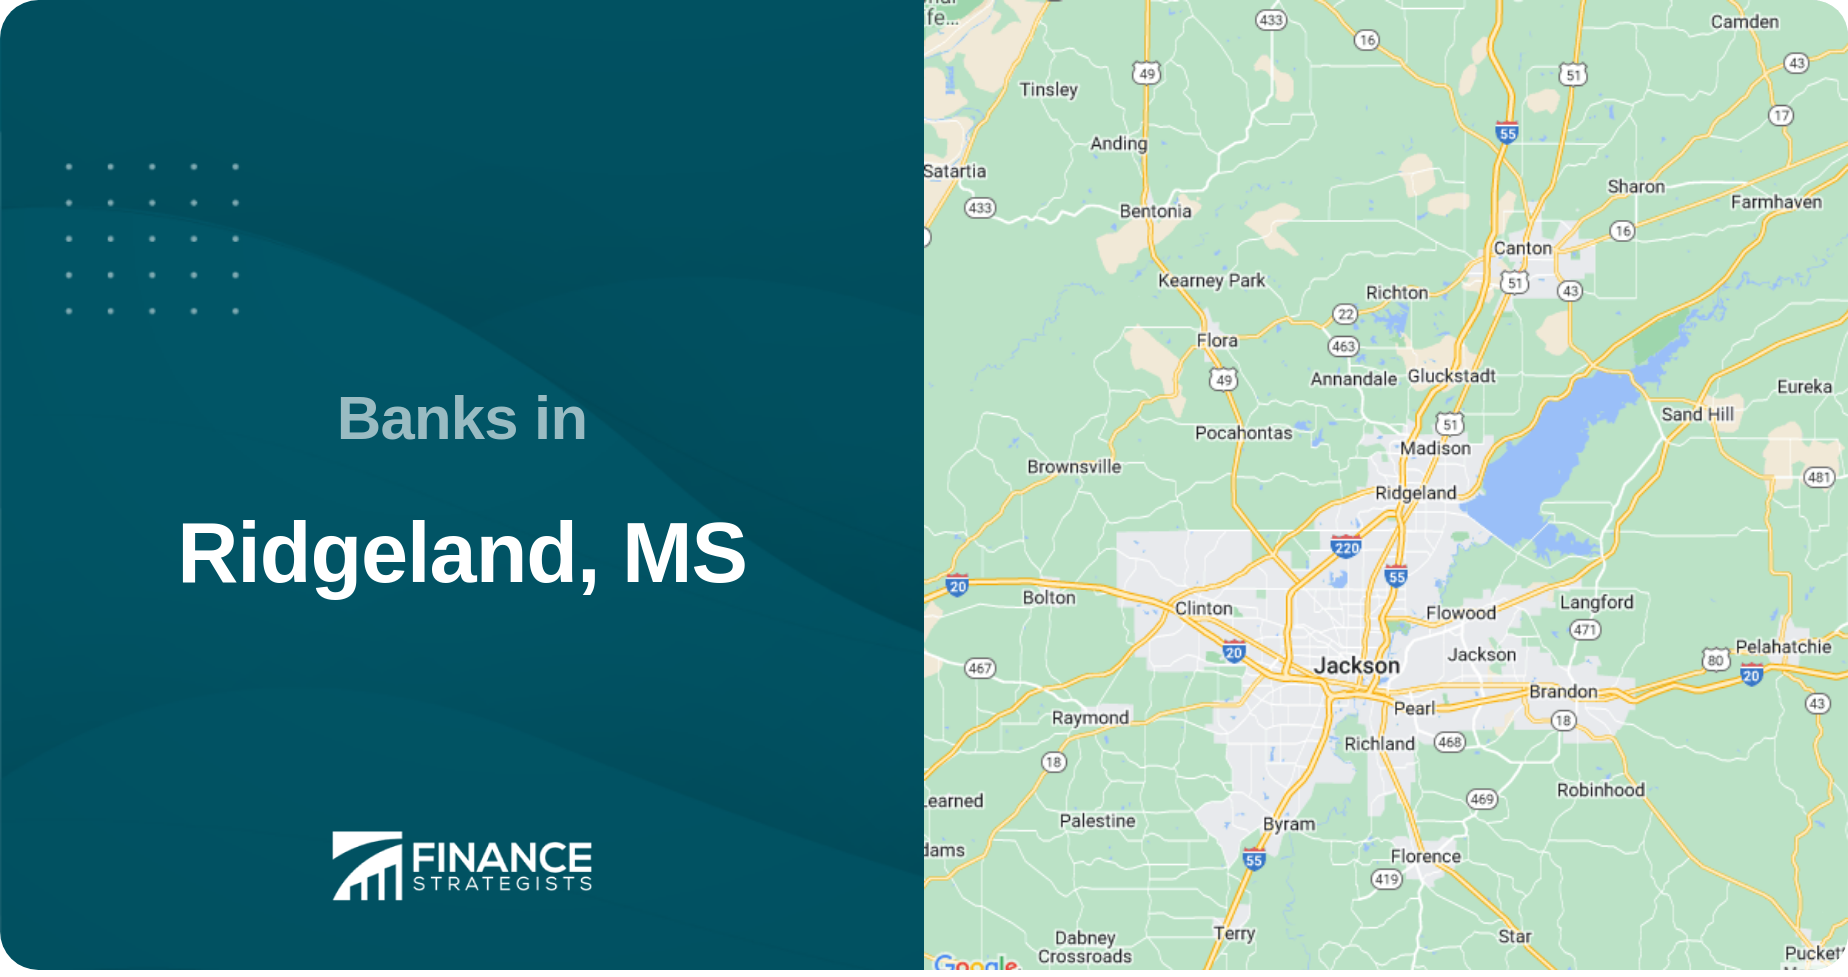 Banks in Ridgeland, MS